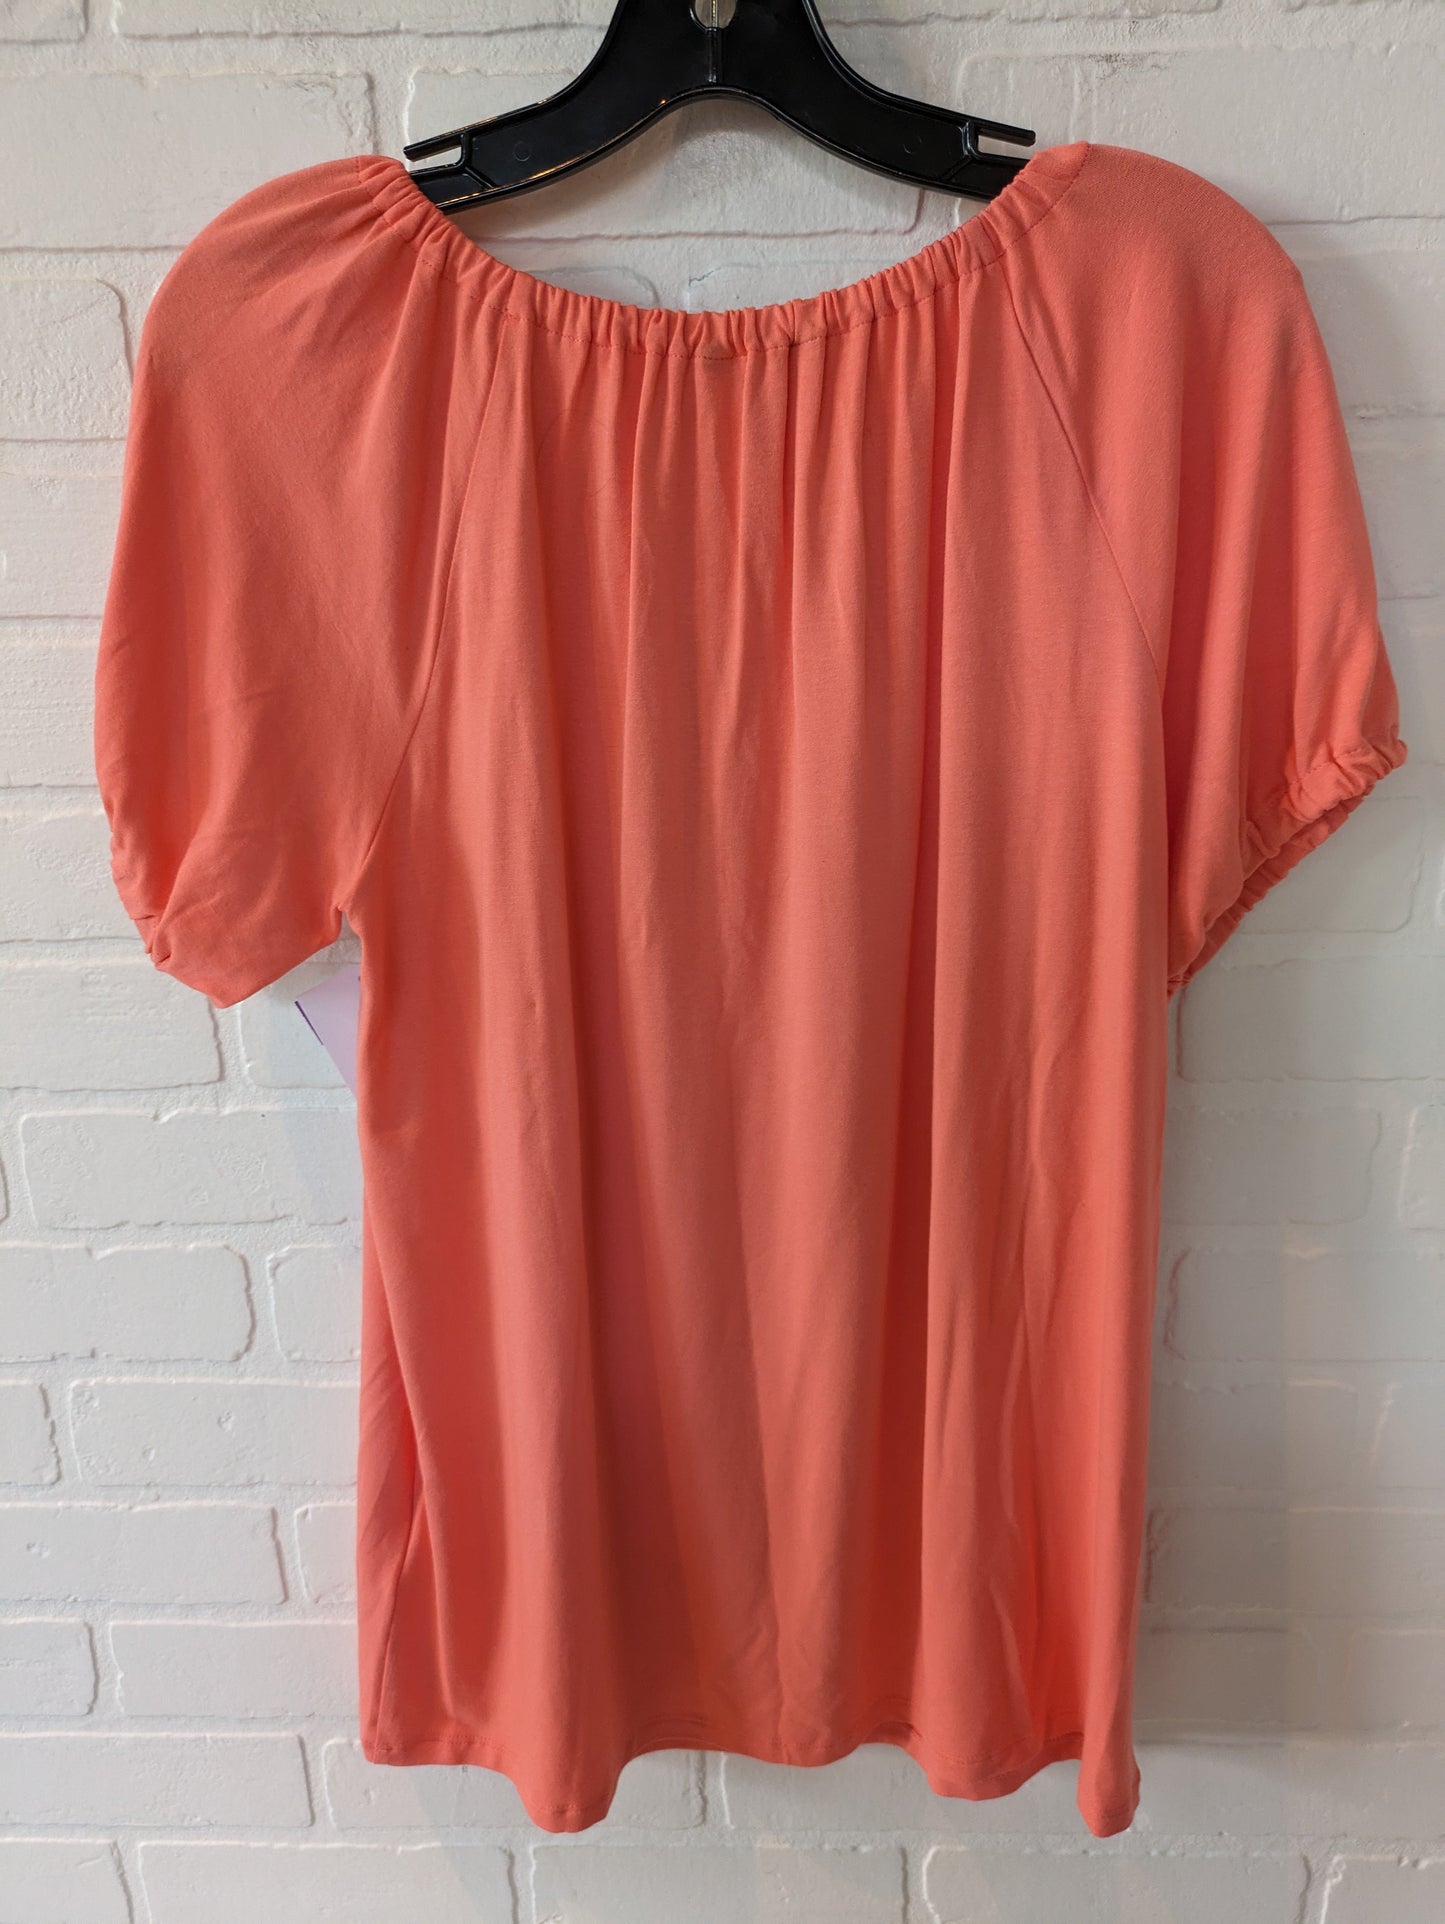 Orange Top Short Sleeve Lauren By Ralph Lauren, Size L